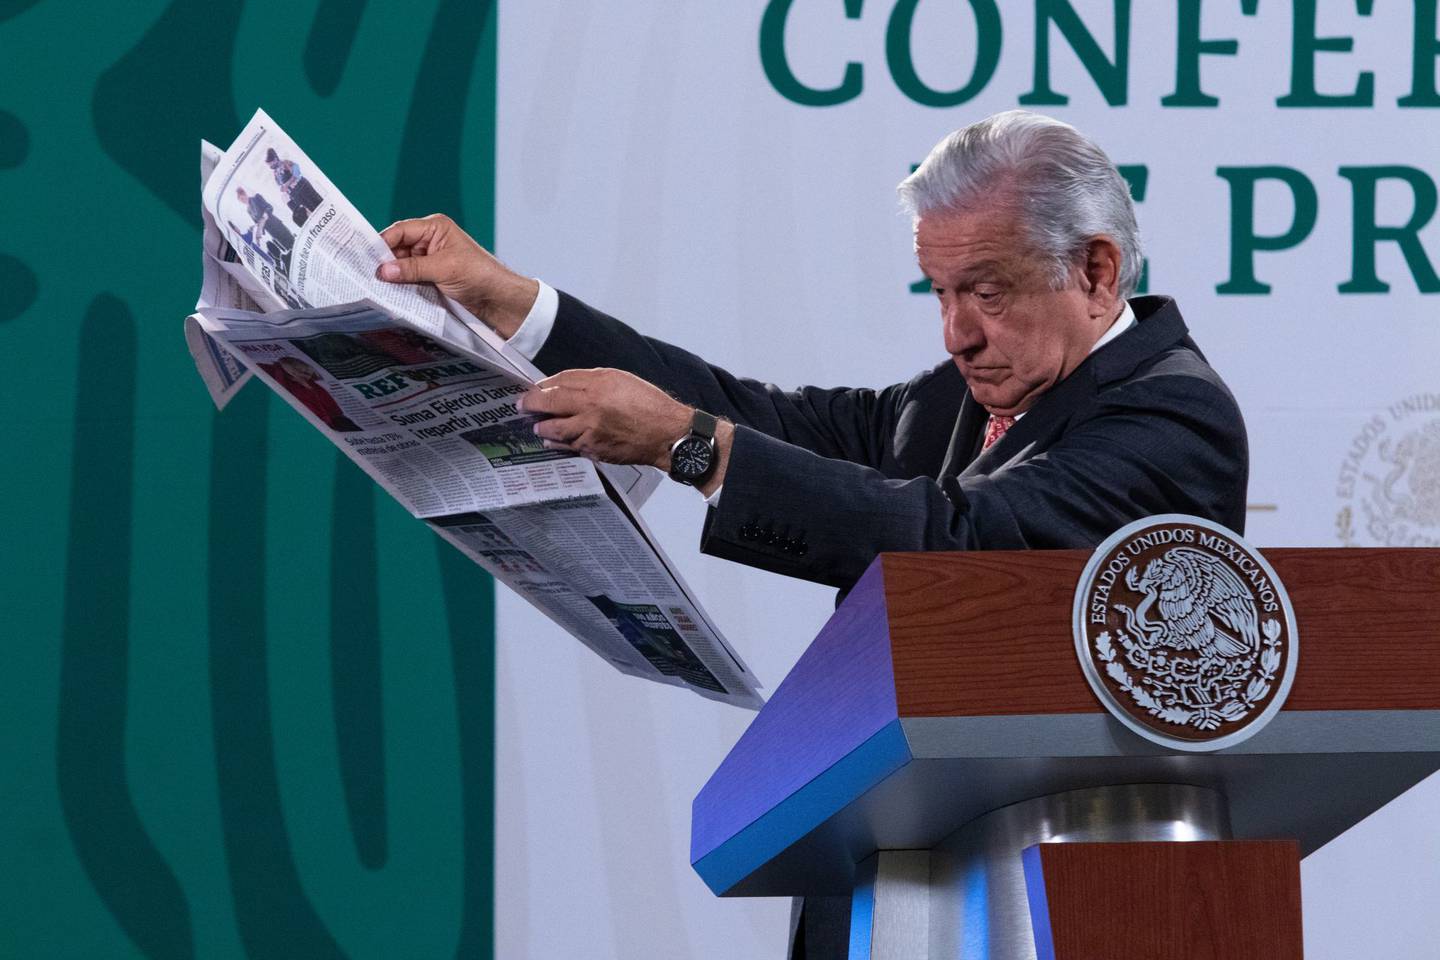 “La prensa se regula con la prensa”, es una de las frases que López Obrador ha adoptado sobre el periodismo en México